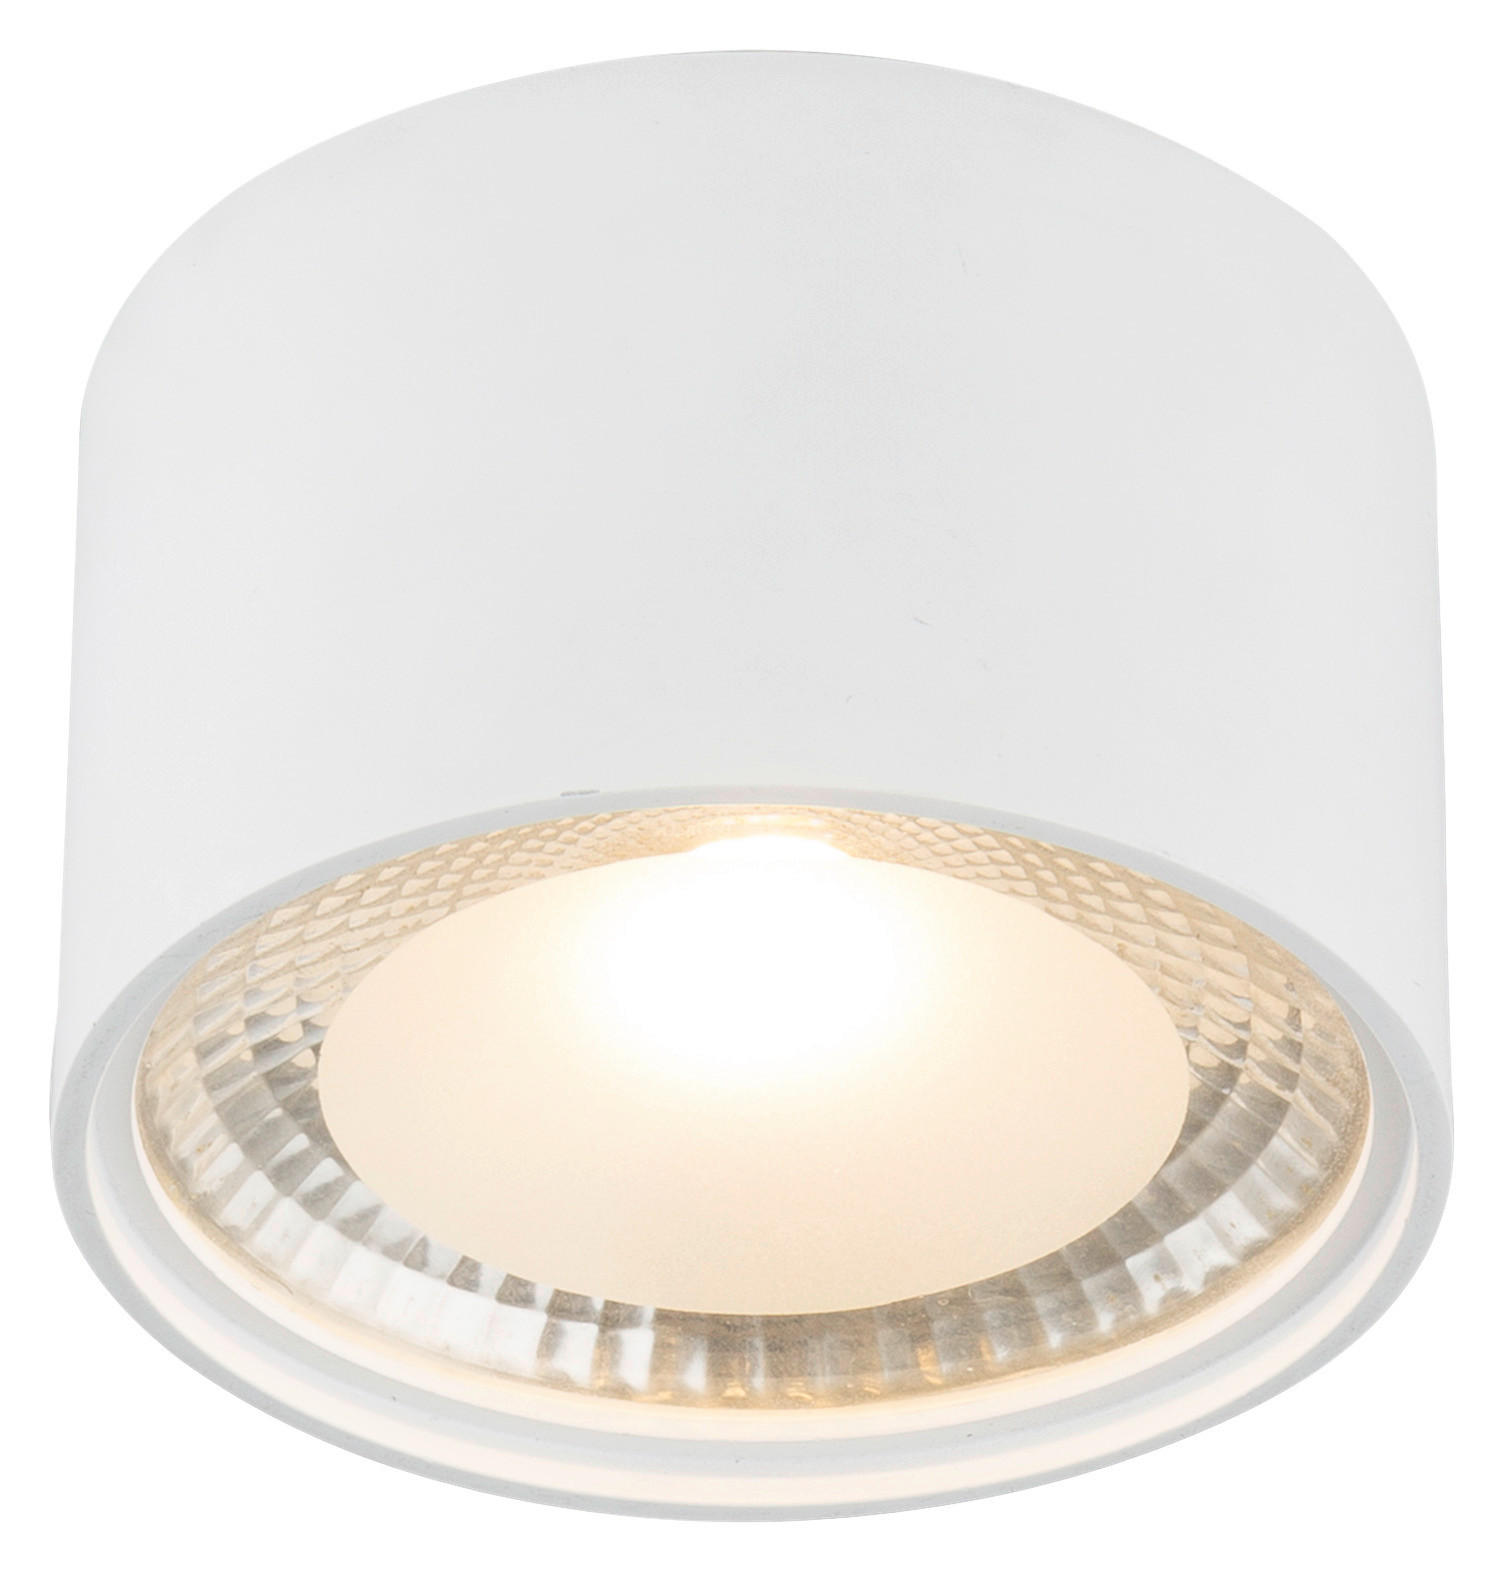 LED-DECKENLEUCHTE 12 W  11,3/8 cm    - Weiß, Design, Metall (11,3/8cm) - Globo